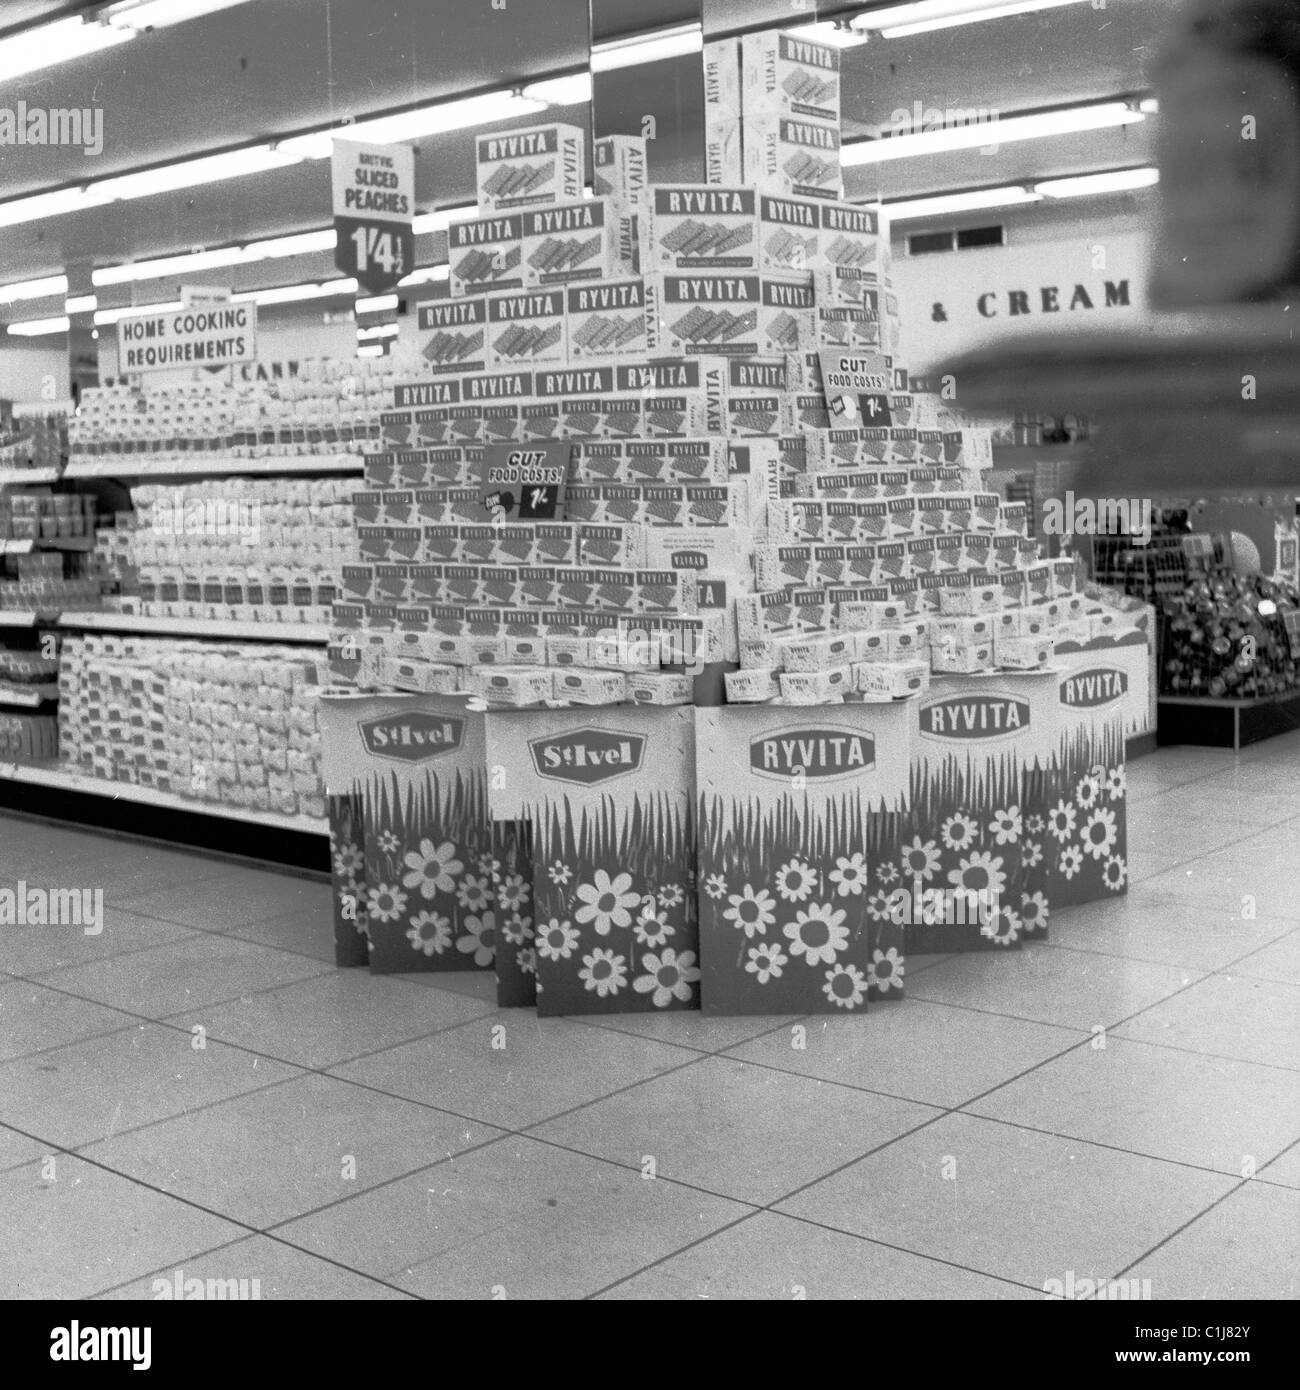 Vers 1960s, à l'intérieur d'une nouvelle boutique libre-service, un supermarché Fine Fare, avec une grande exposition promotionnelle de produits Ryvita, Angleterre, Royaume-Uni. Banque D'Images